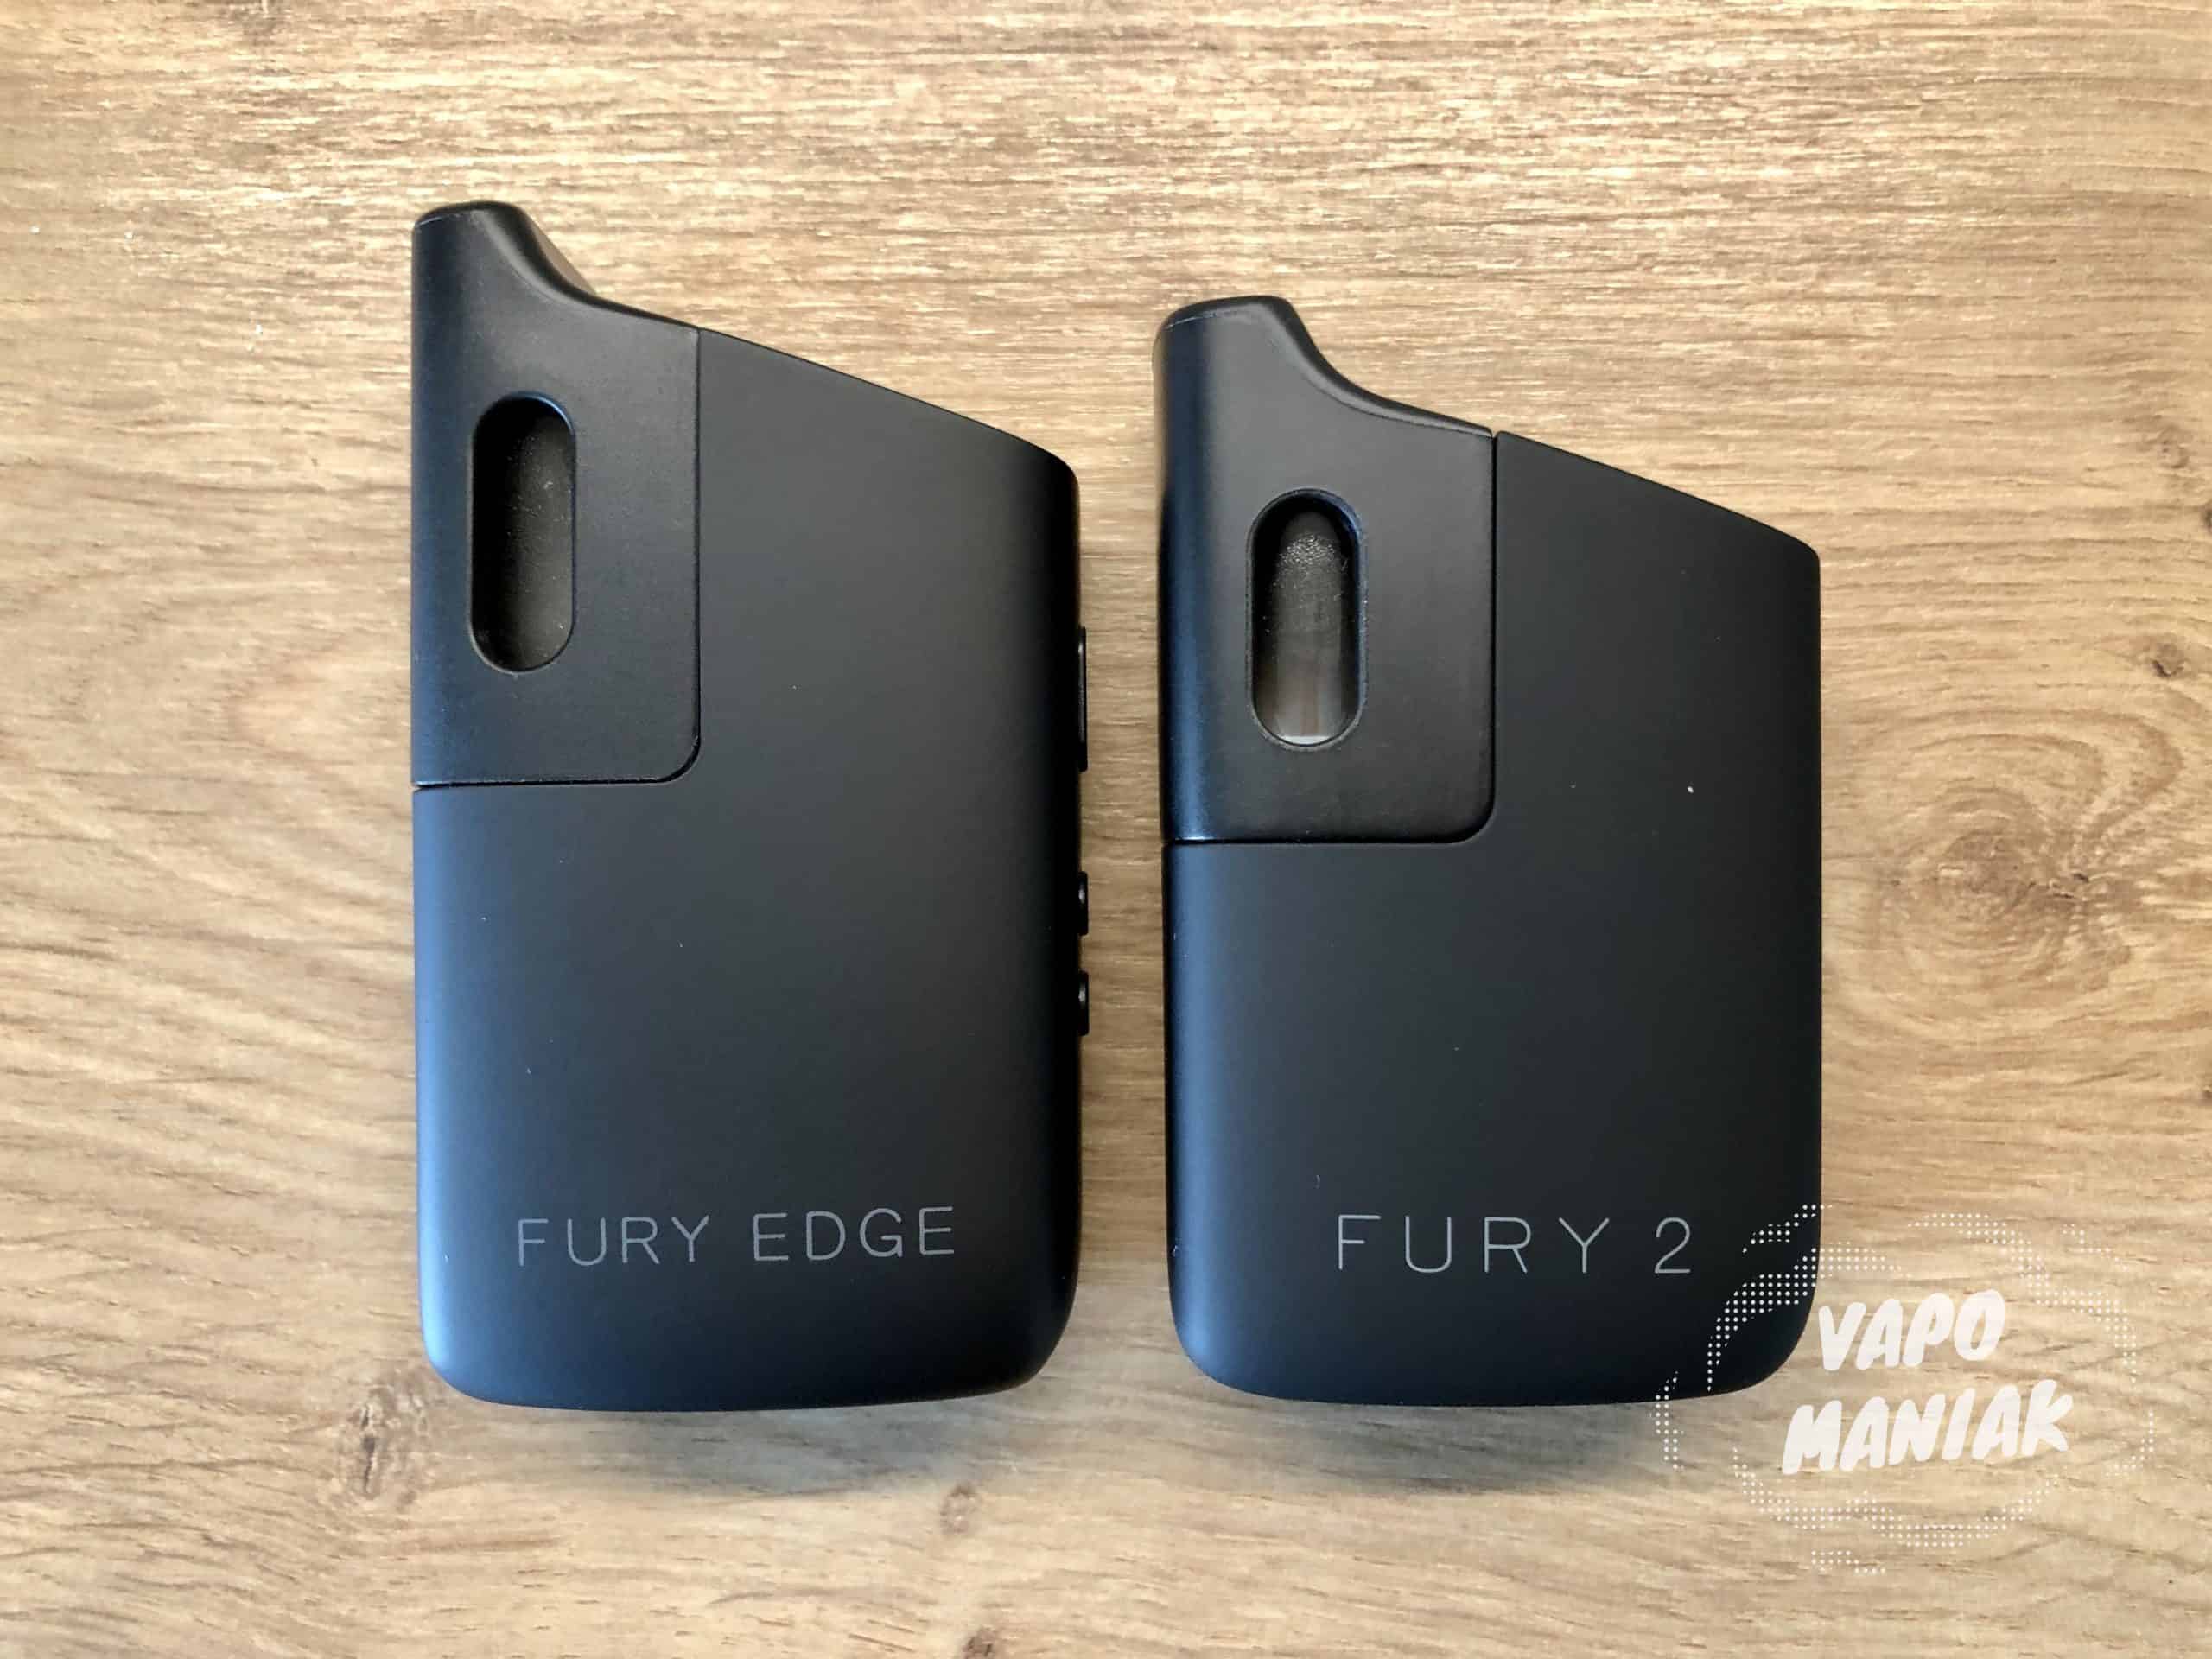 Jeśli zależy nam na widocznie mocniejszej baterii, warto rozważenia jest wybór FURY EDGE (po lewej).